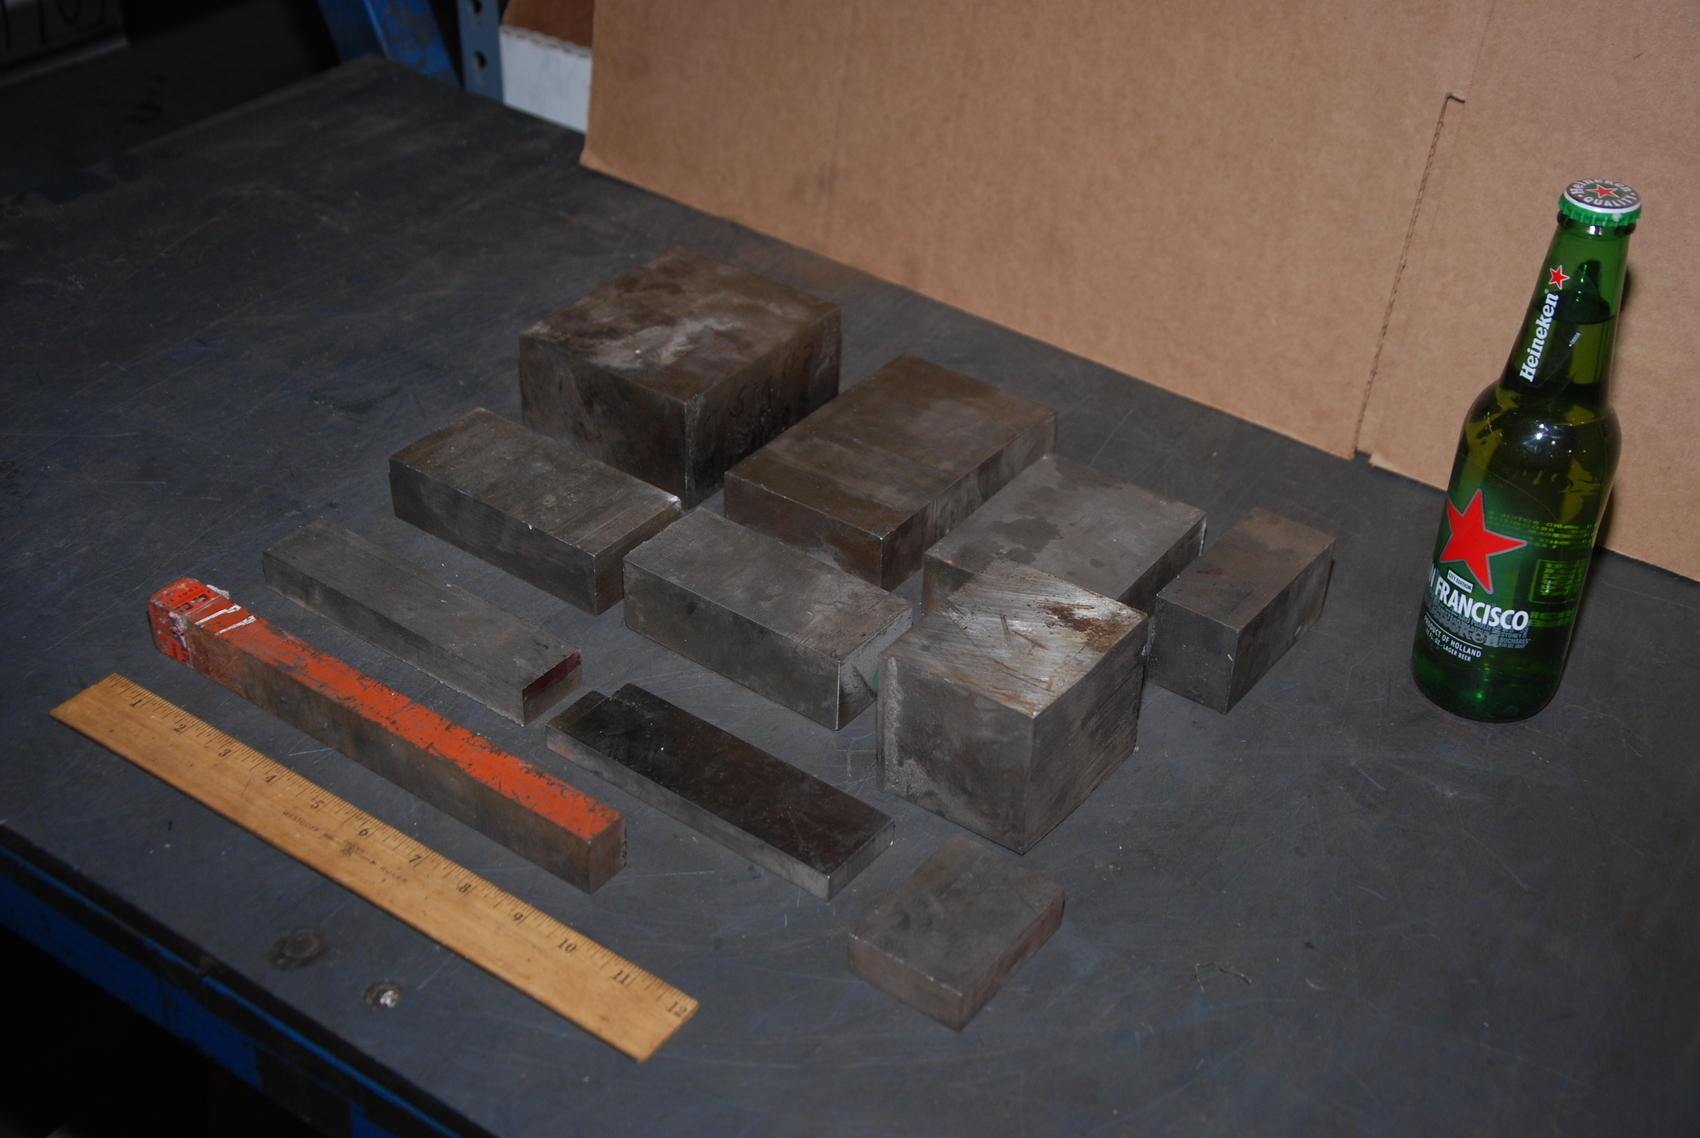 Lot of 11 steel Rectangular Bars for blacksmith anvil,45 lbs